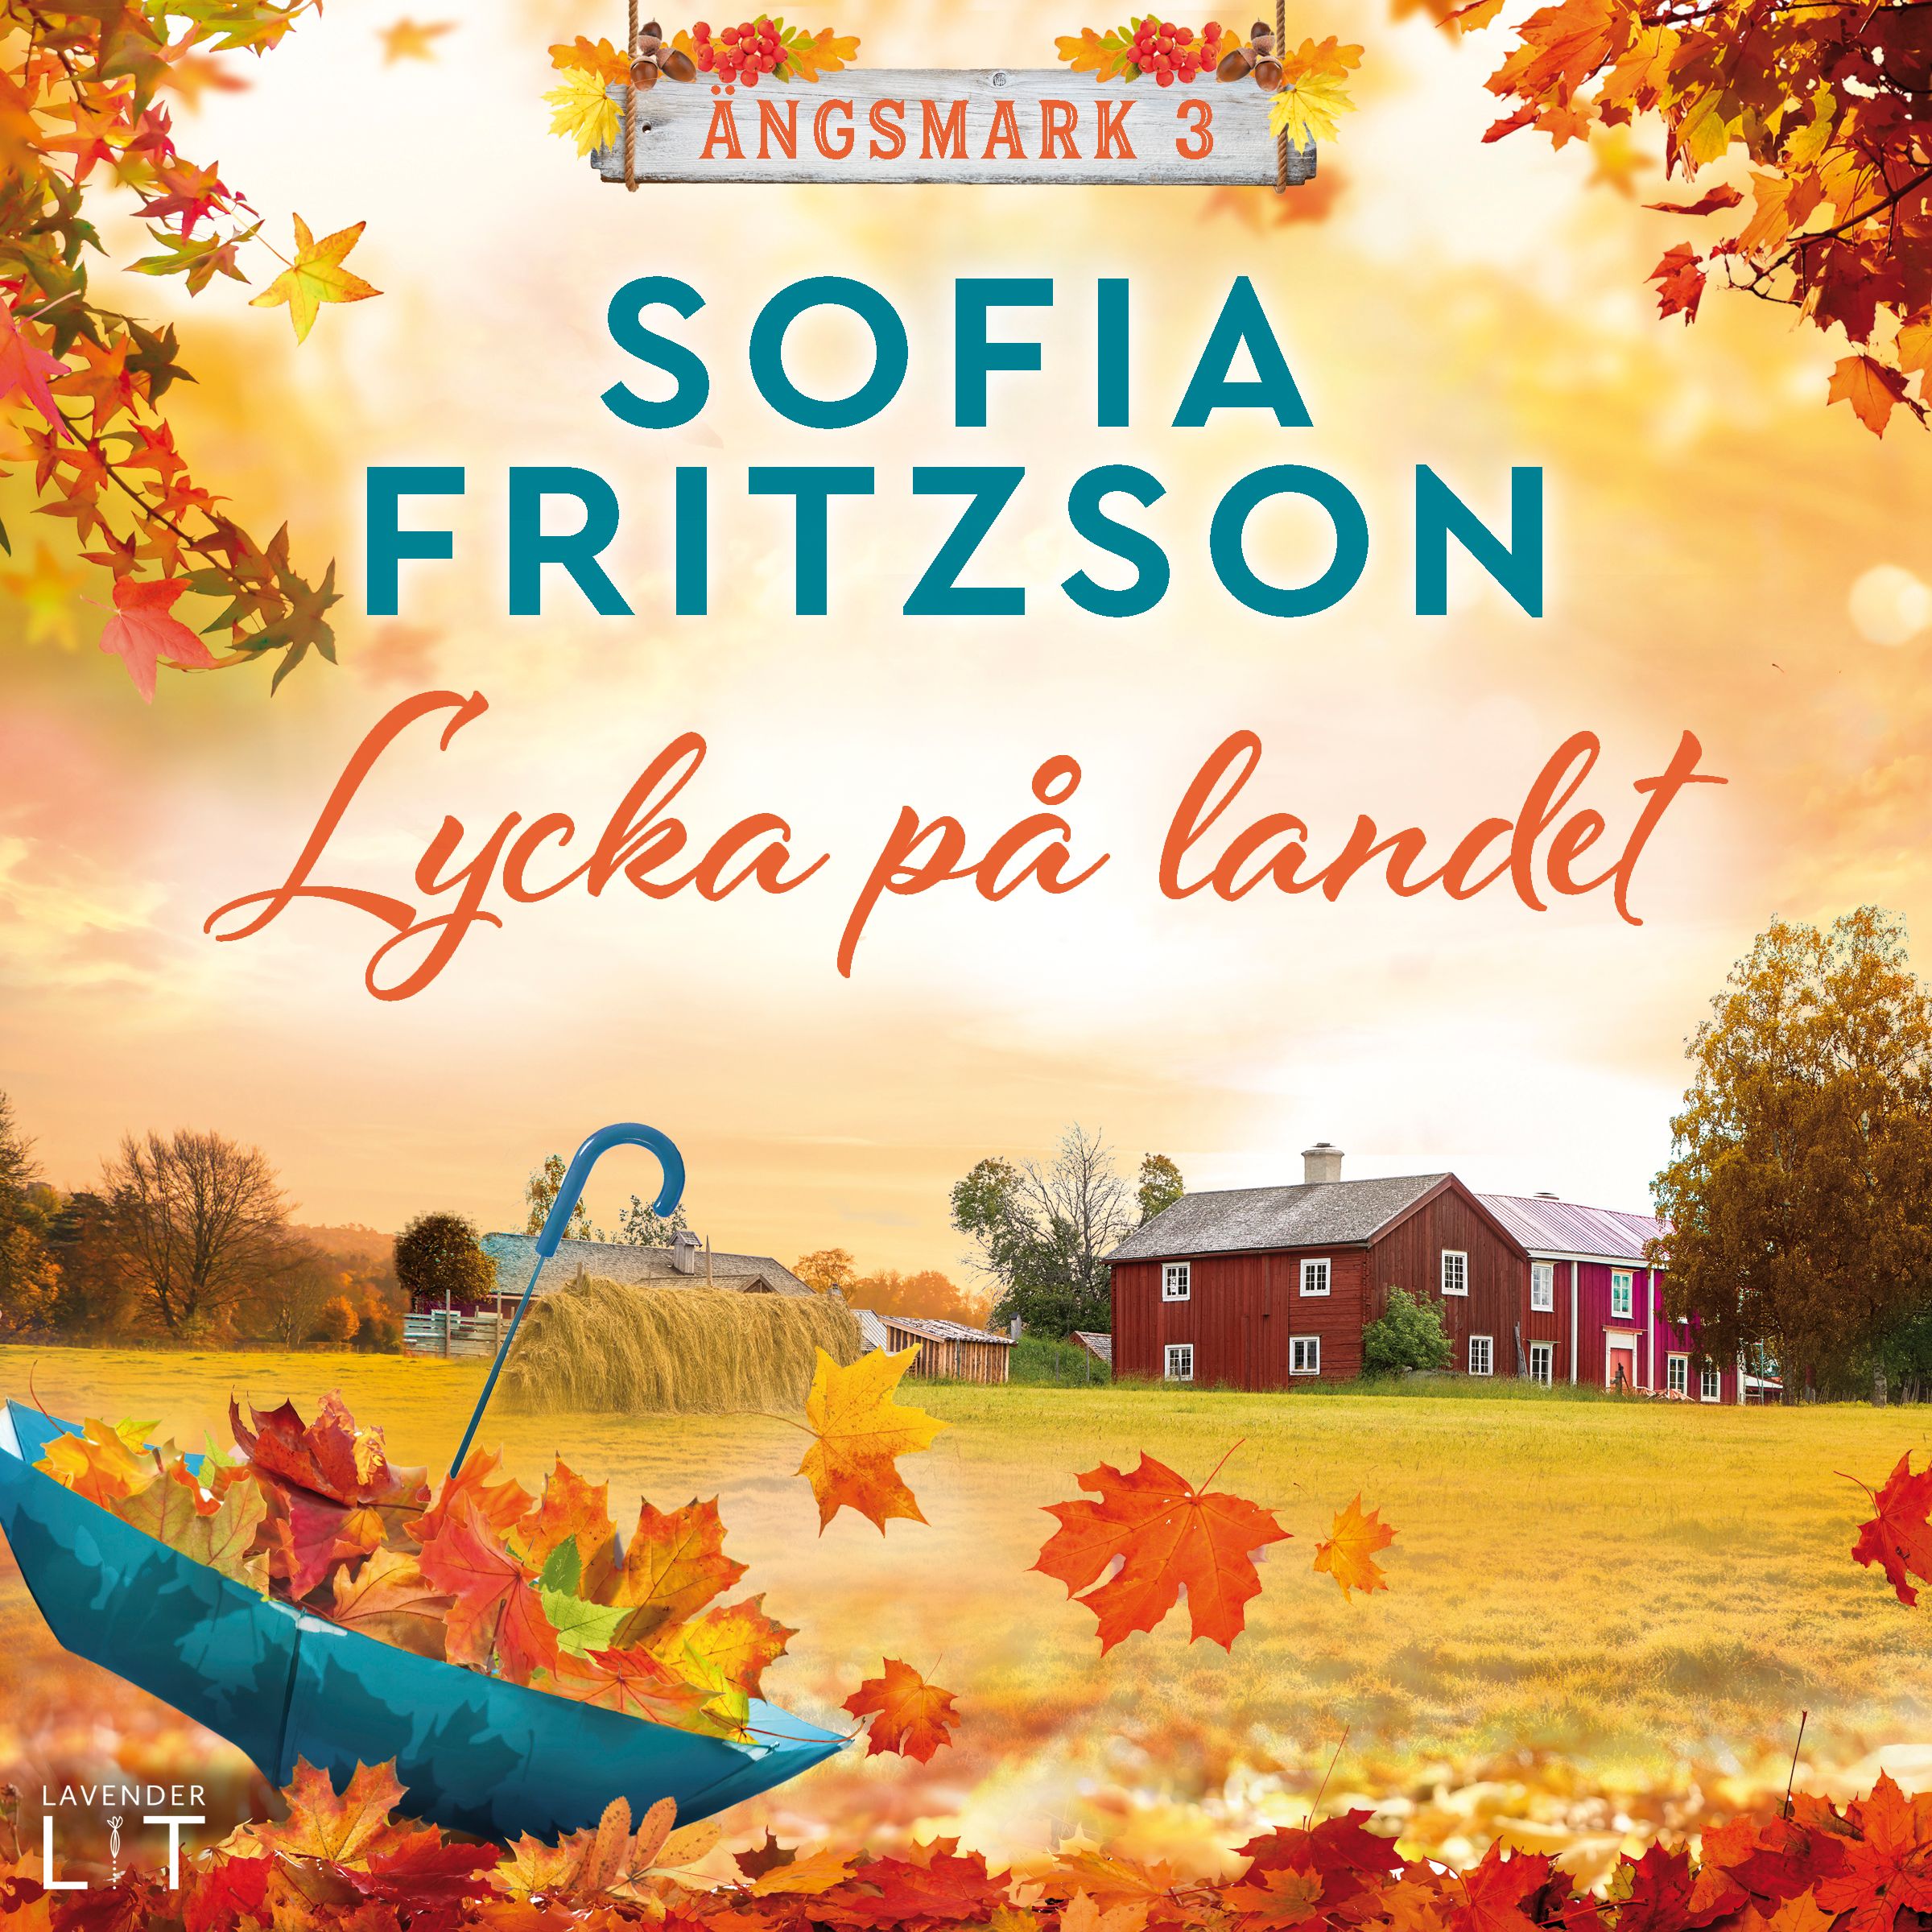 Lycka på landet, ljudbok av Sofia Fritzson